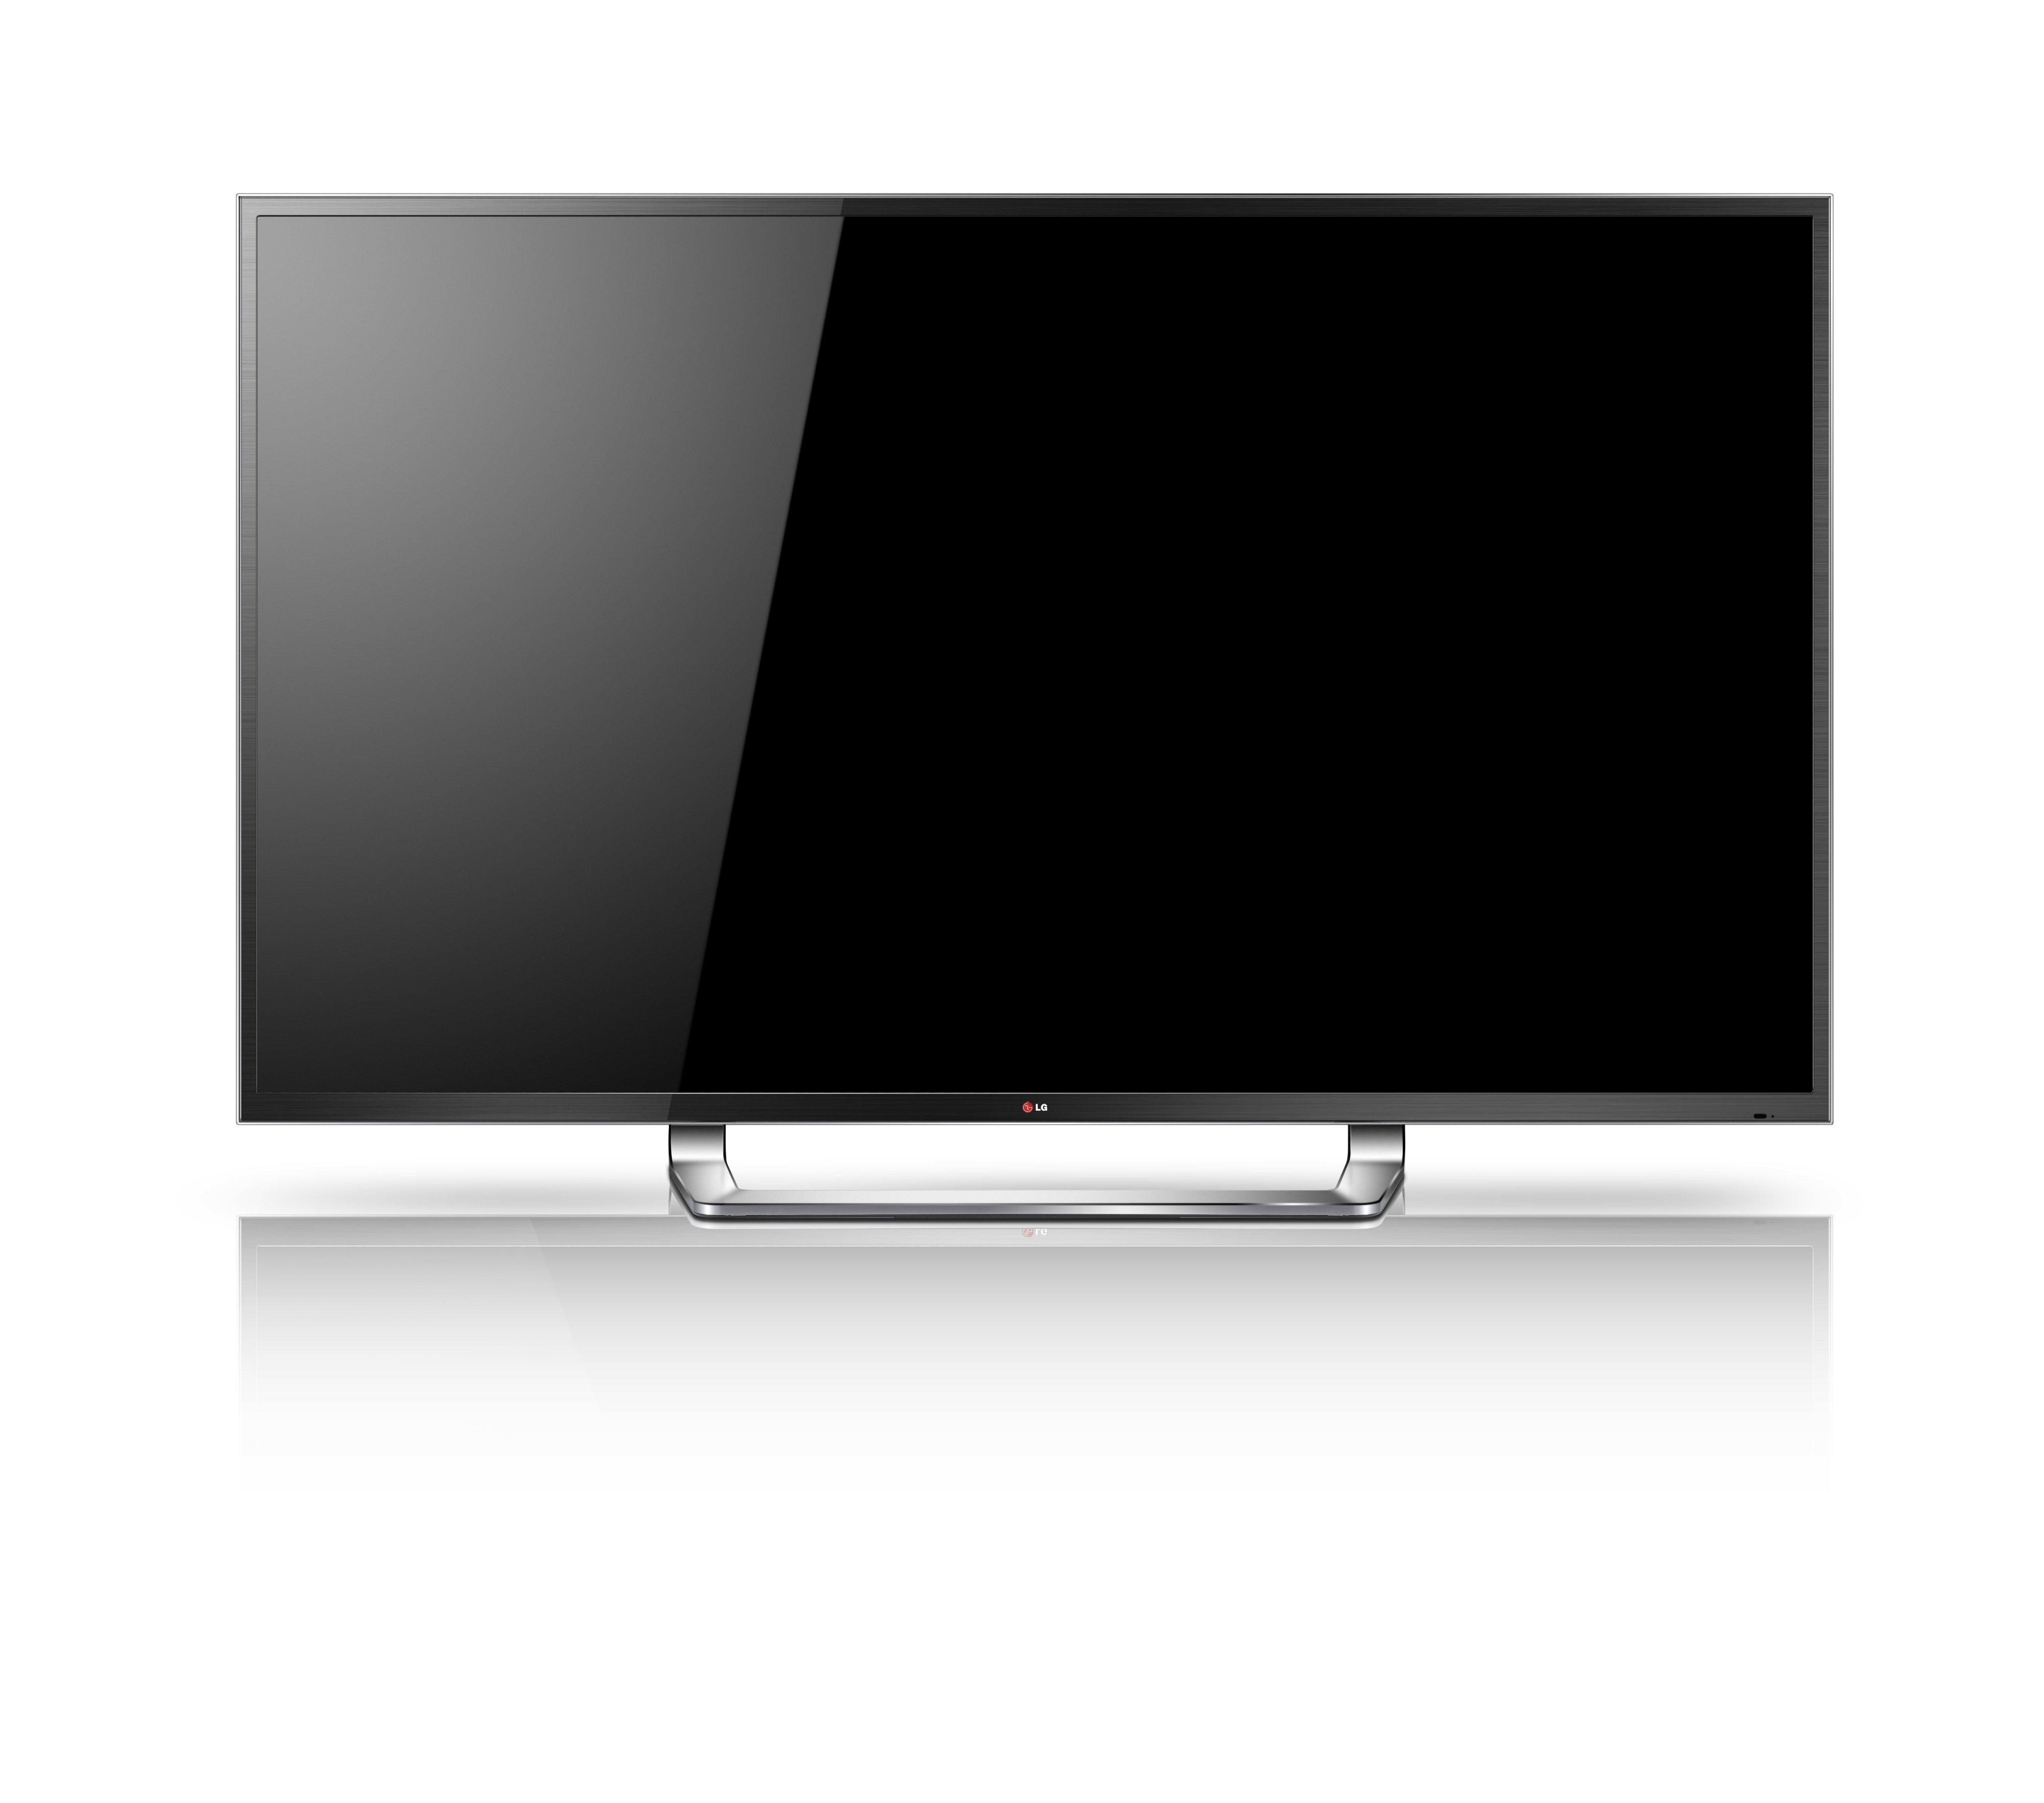 Vierfache Full HD-Auflösung: LG zeigt den weltweit ersten 84-Zoll UD 3D TV auf der IFA 2012